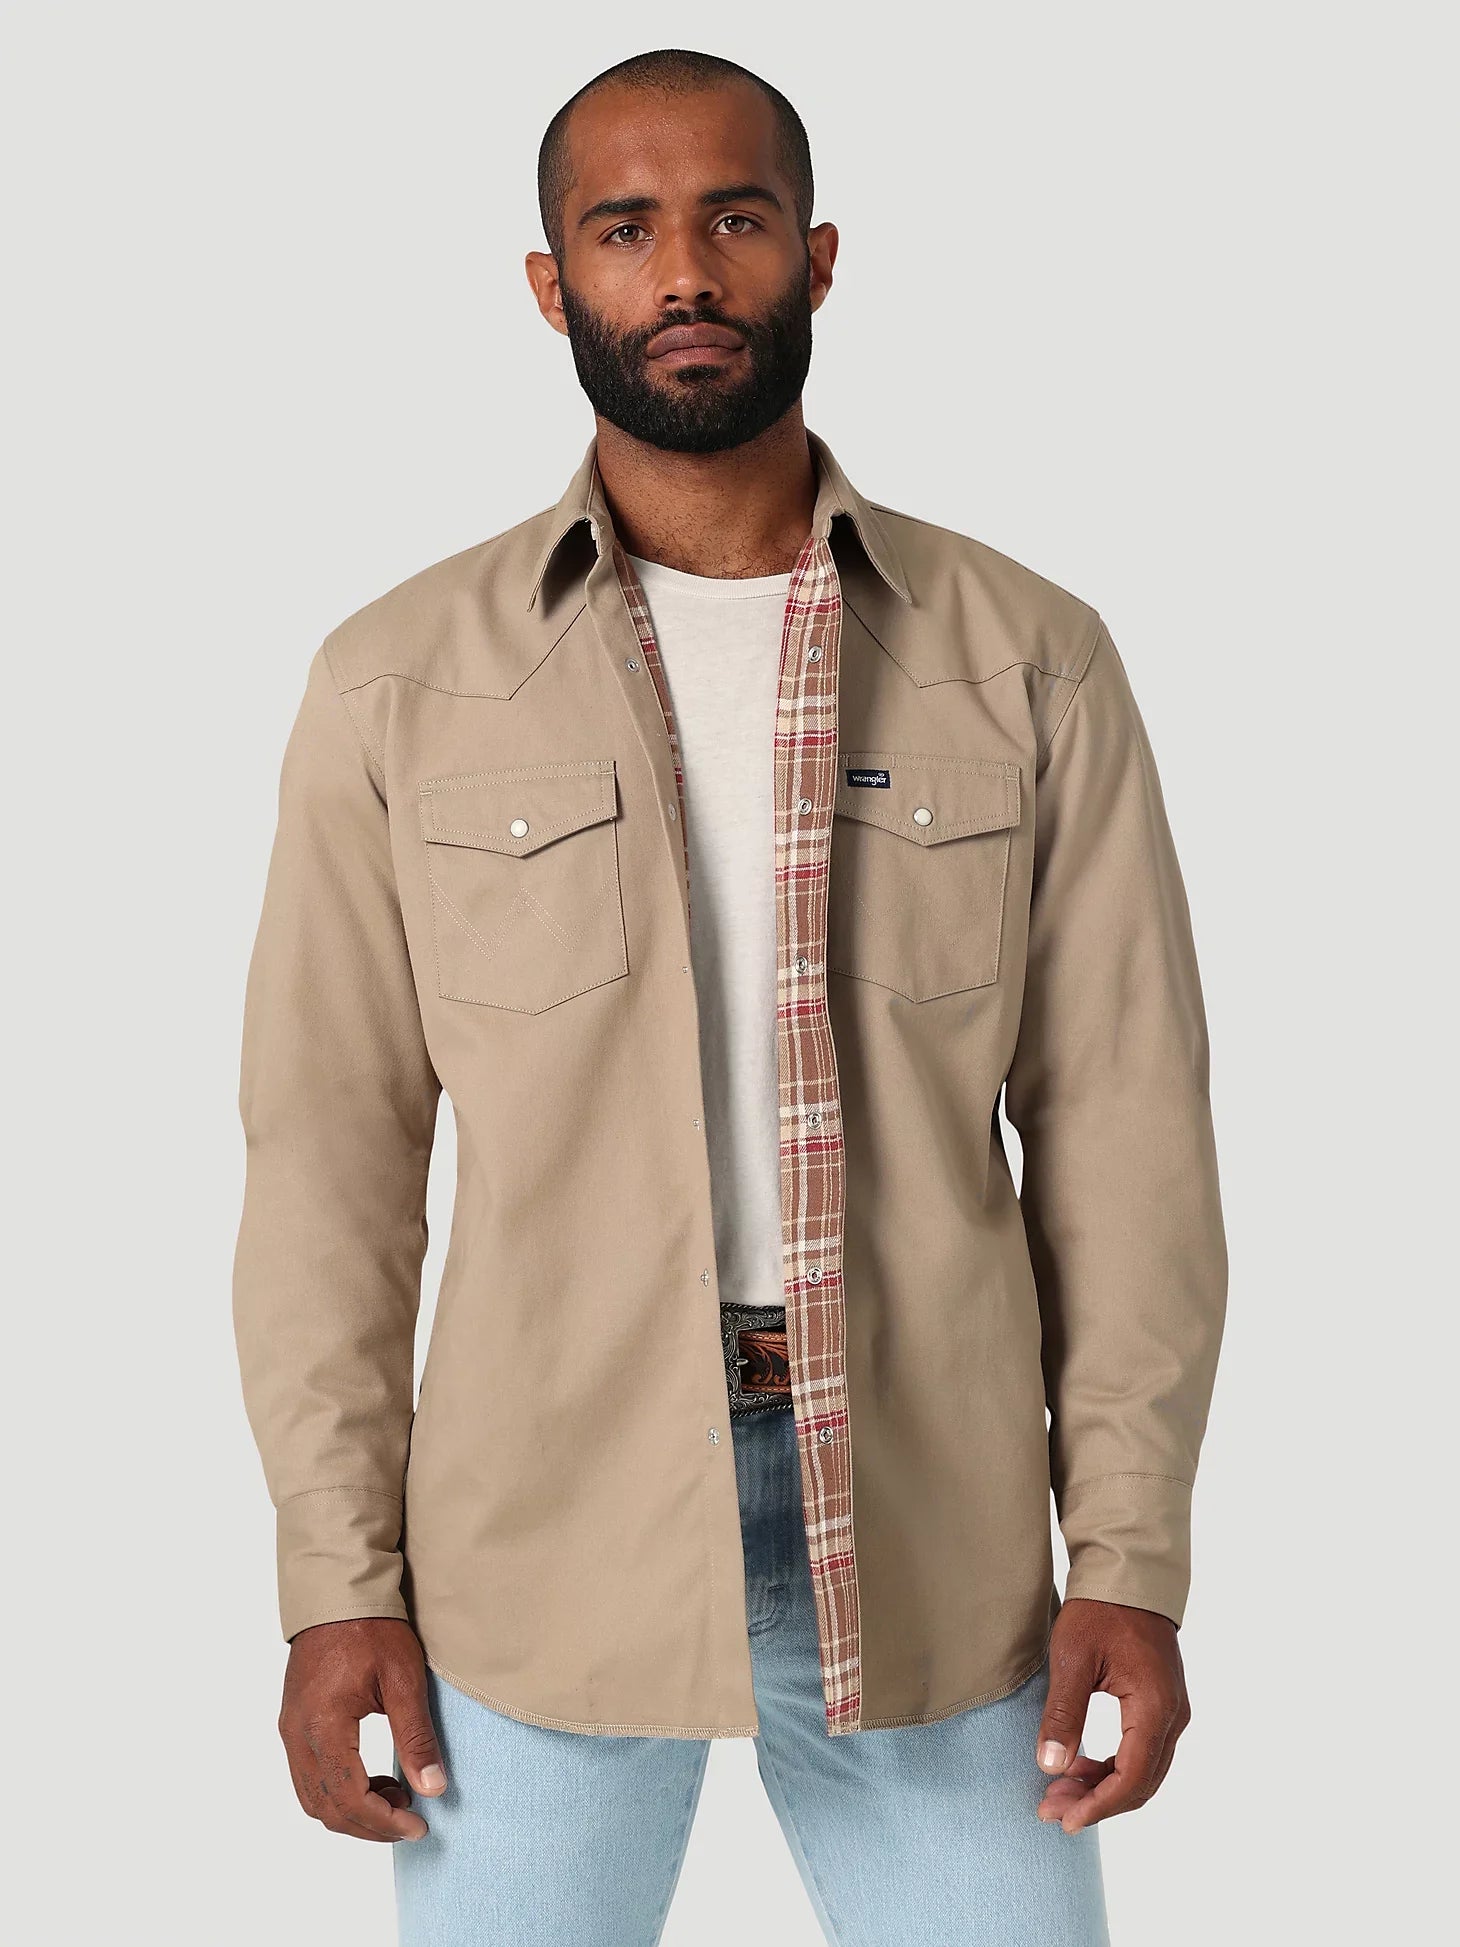 Wrangler Men's Flanned Lined Work Shirt